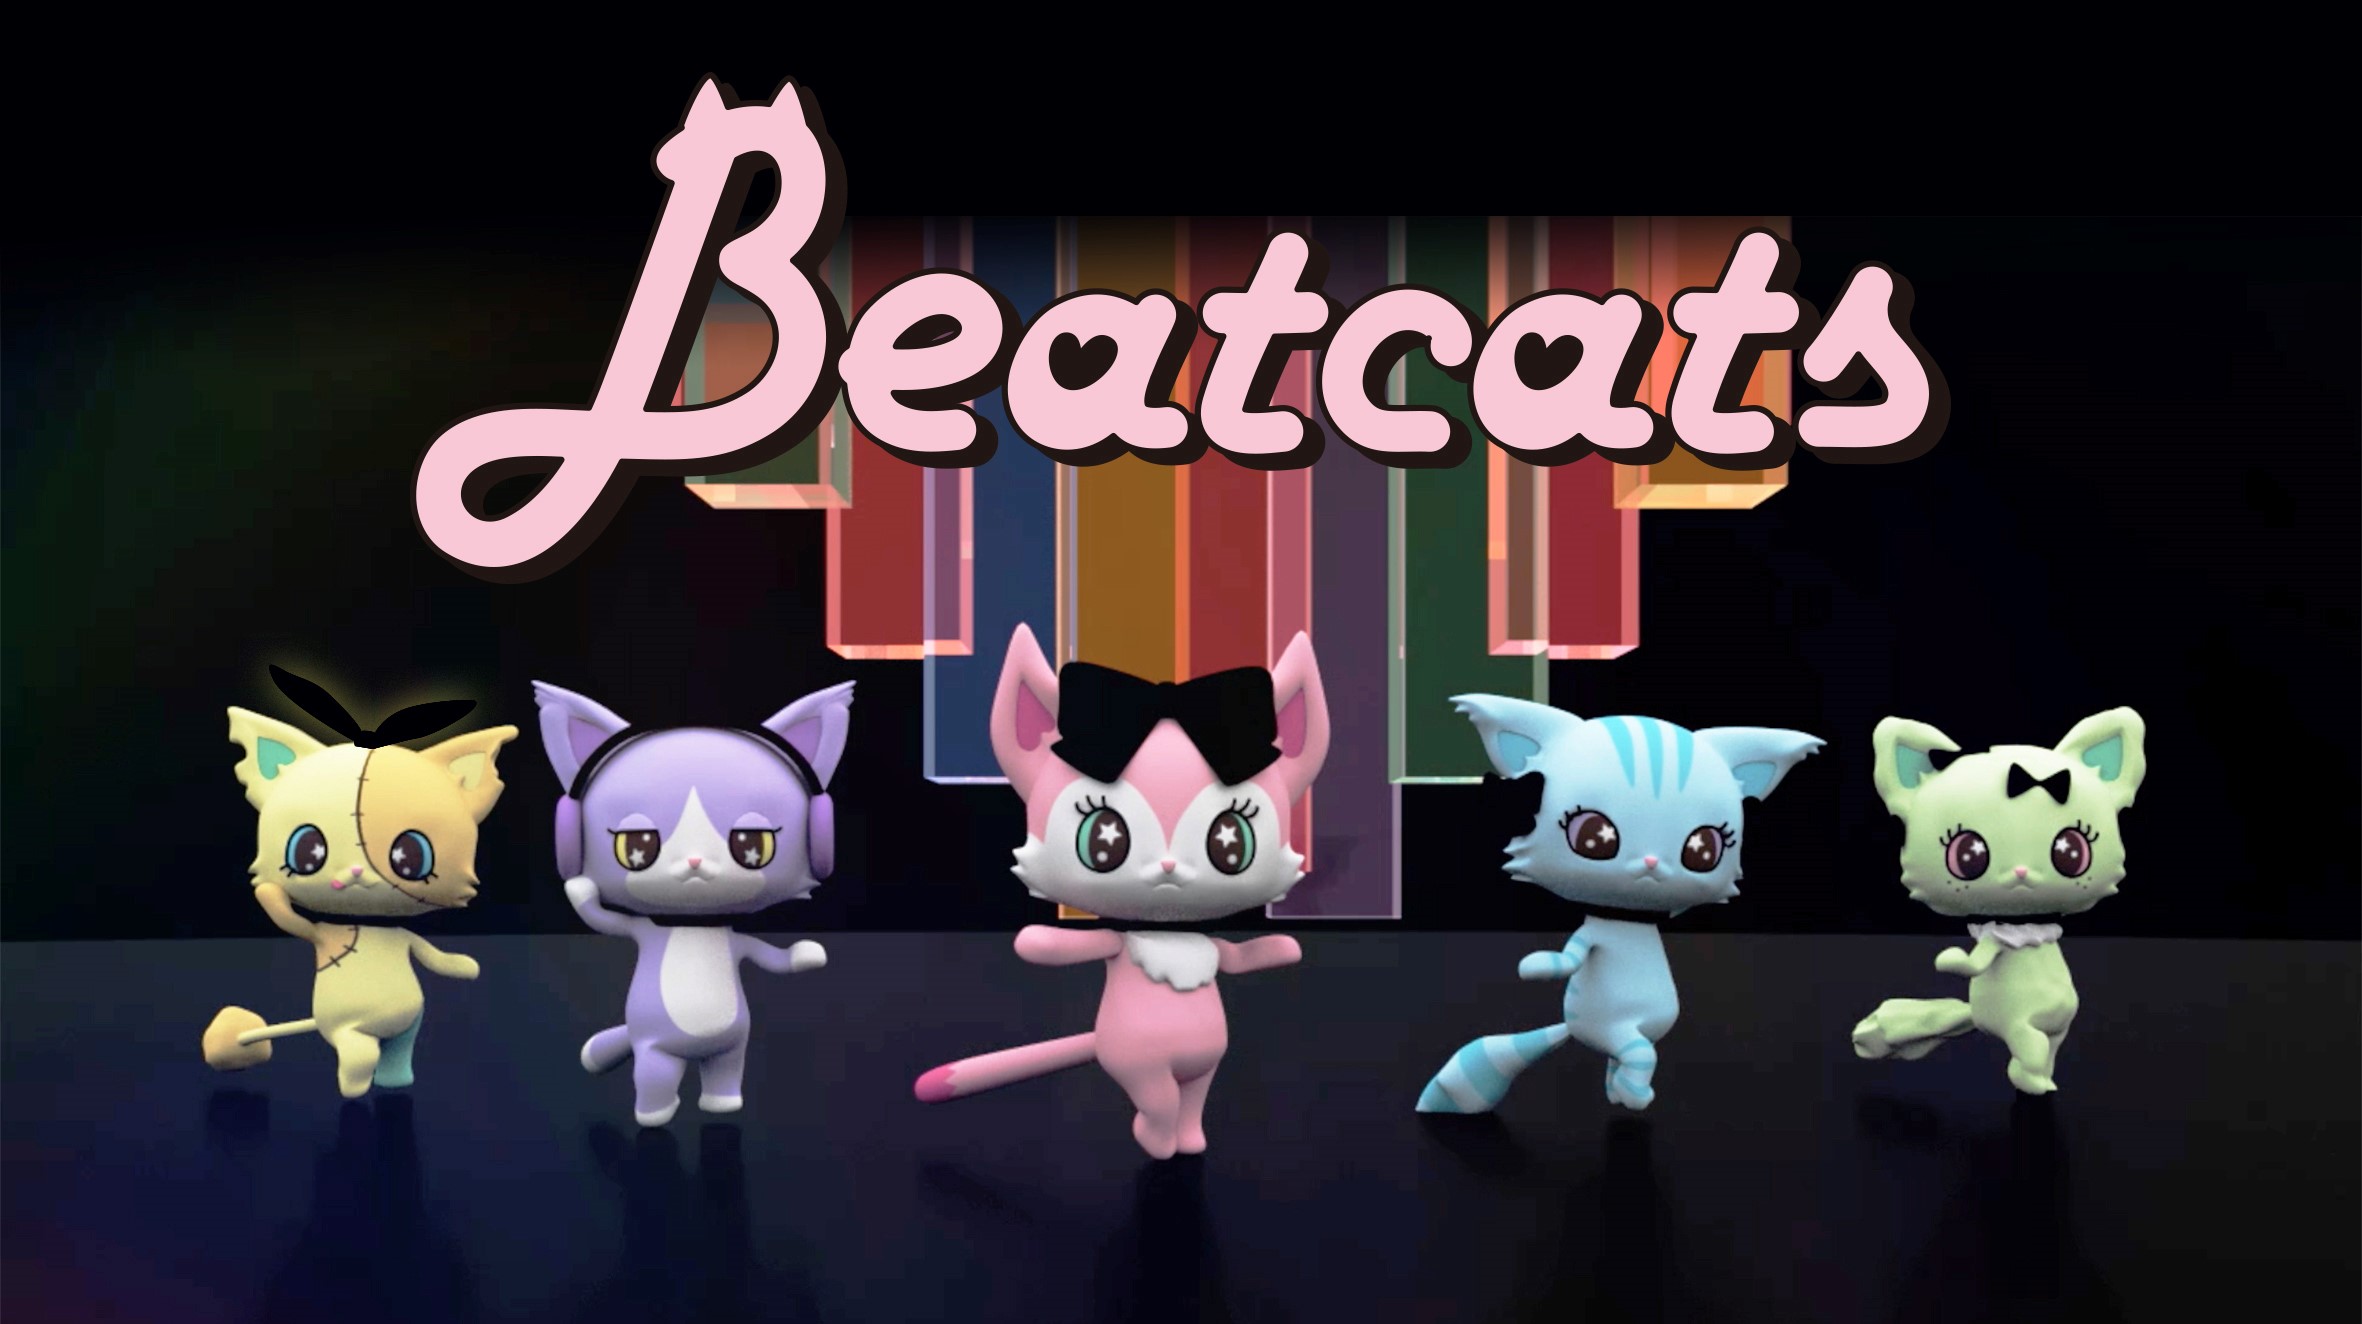 セガトイズとサンリオ 新たなキャラクター共同開発プロジェクト始動5人組ダンスボーカルユニット Beatcats ビートキャッツ 10月8日 木 デビュー 株式会社サンリオ のプレスリリース